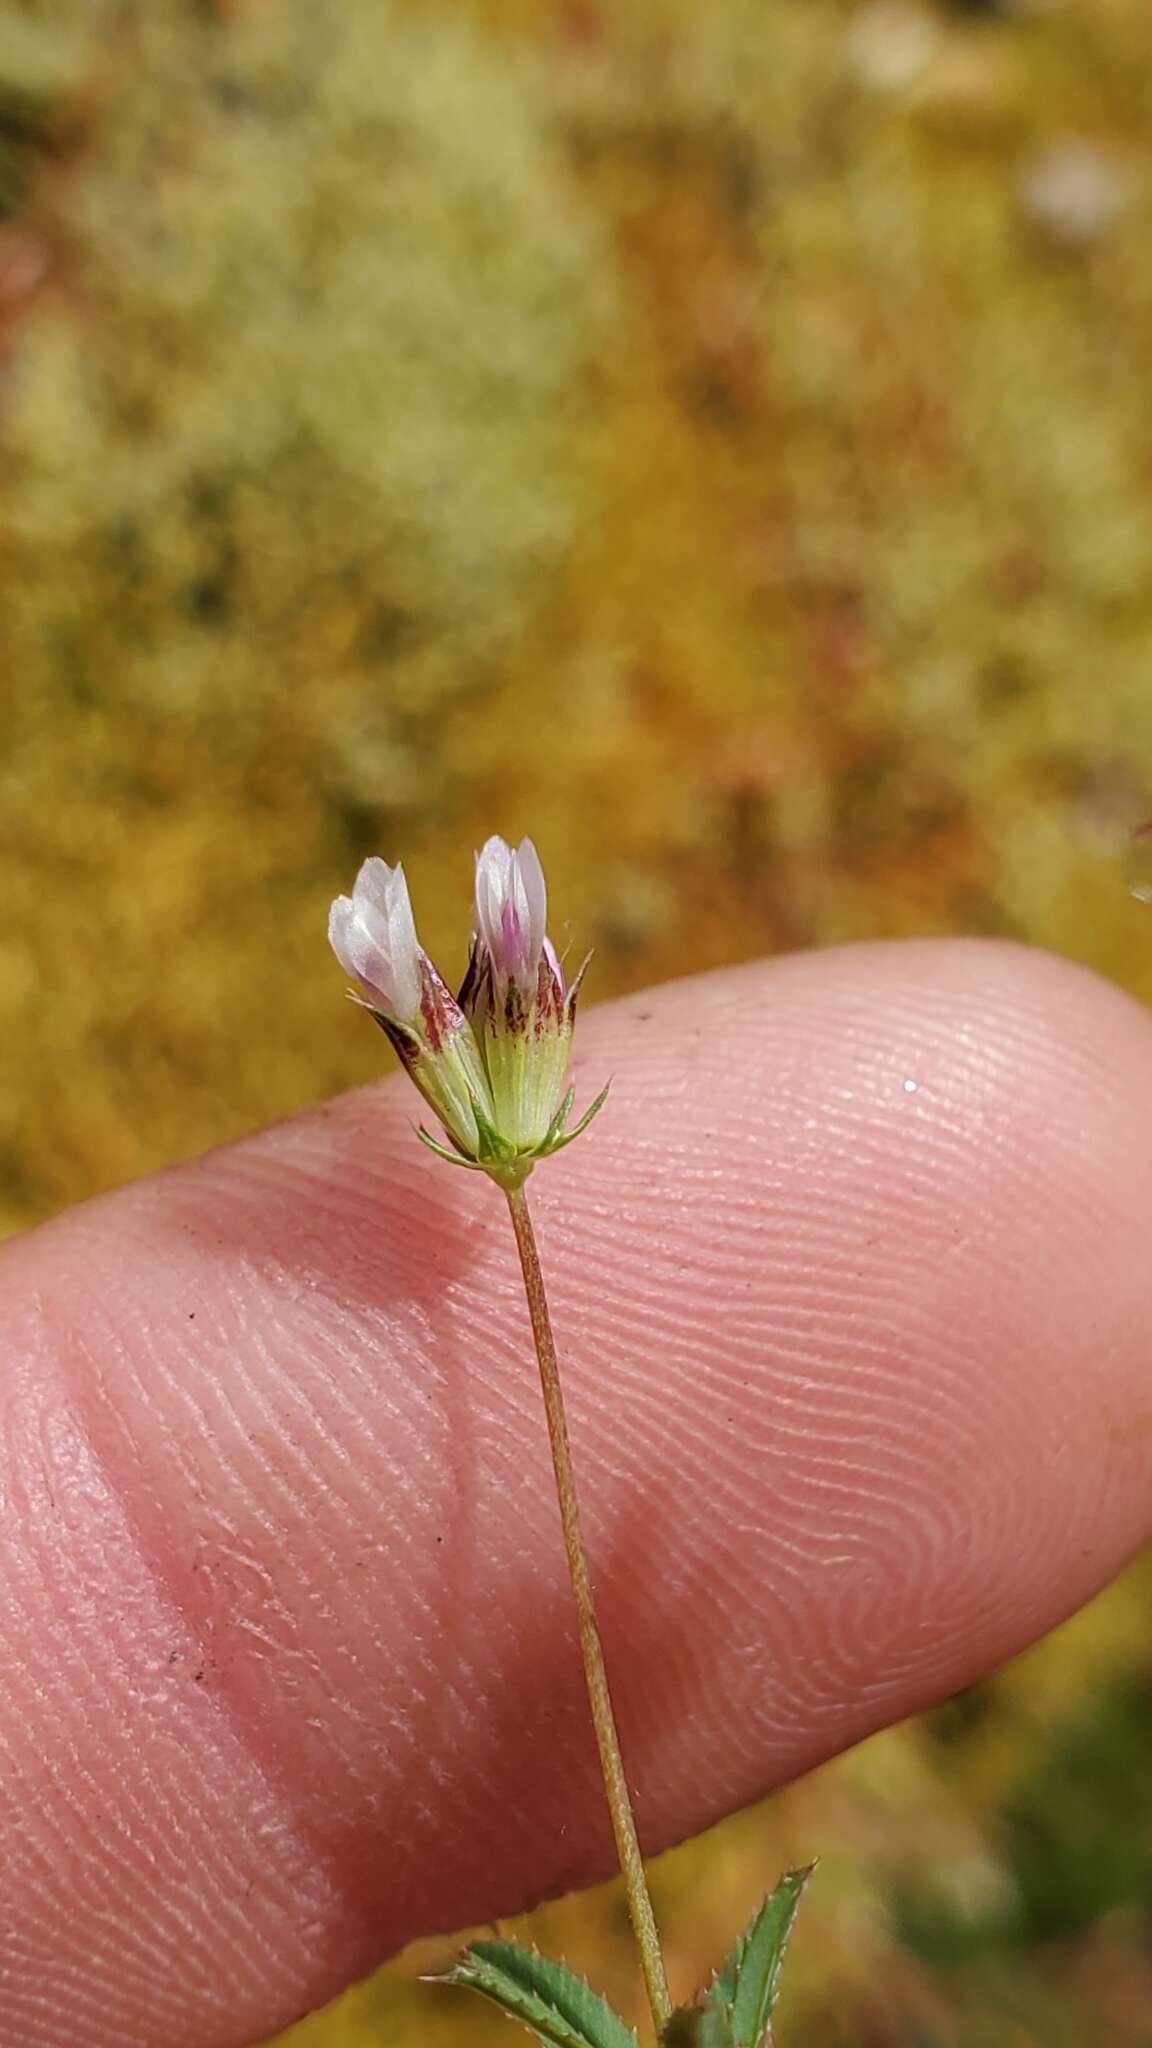 Image of fewflower clover